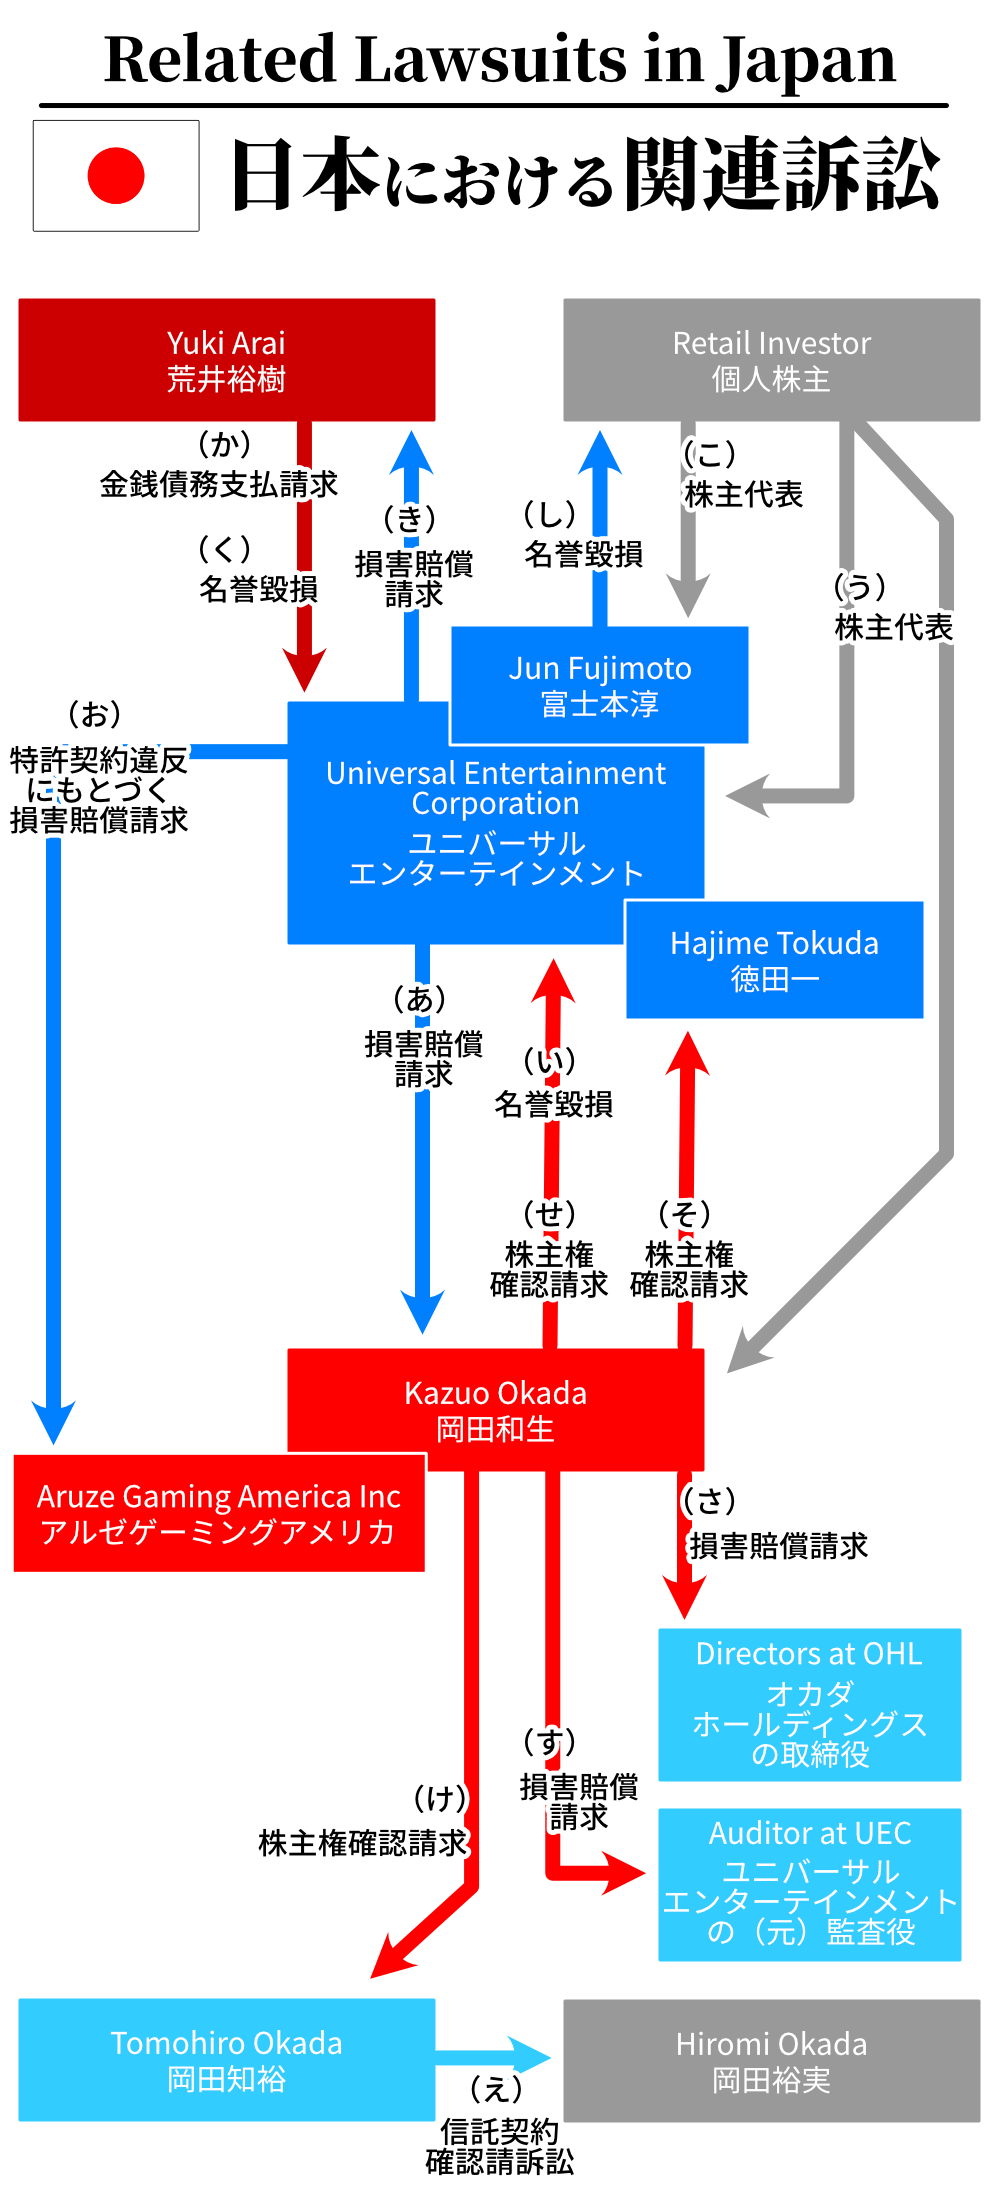 ユニバーサルエンターテインメントと岡田和生に関連する訴訟の相関図(日本)